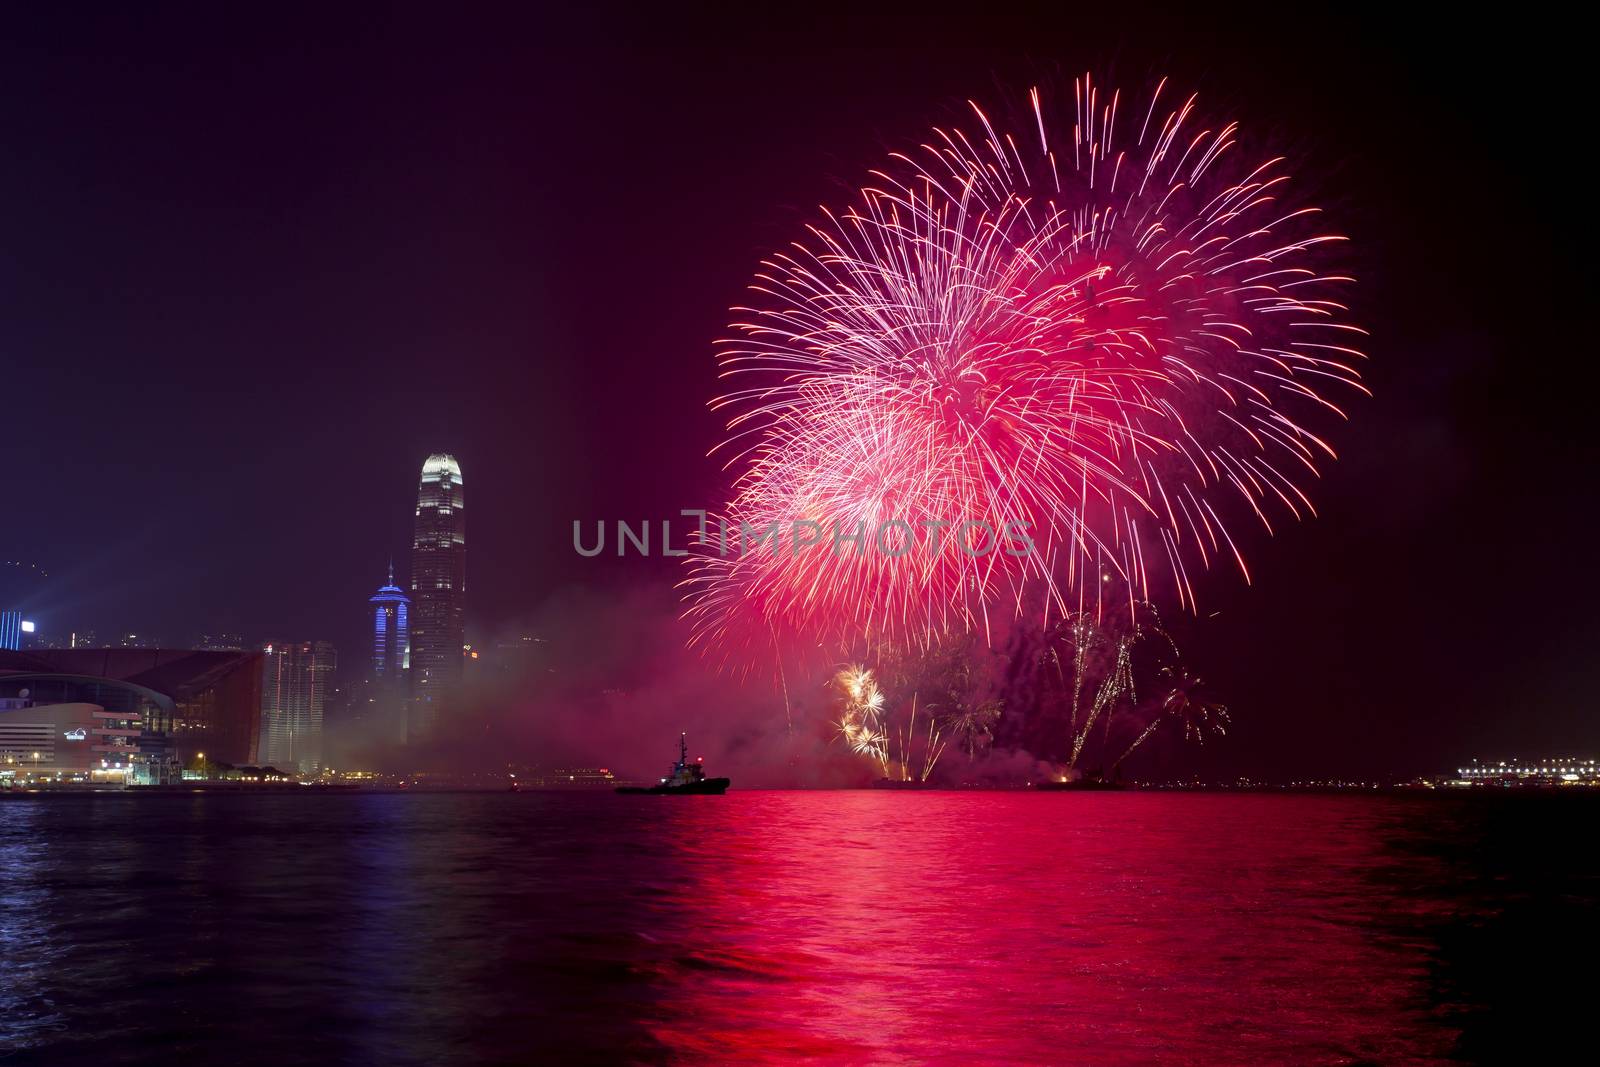 Hong Kong Chinese New Year fireworks 2014 by kawing921